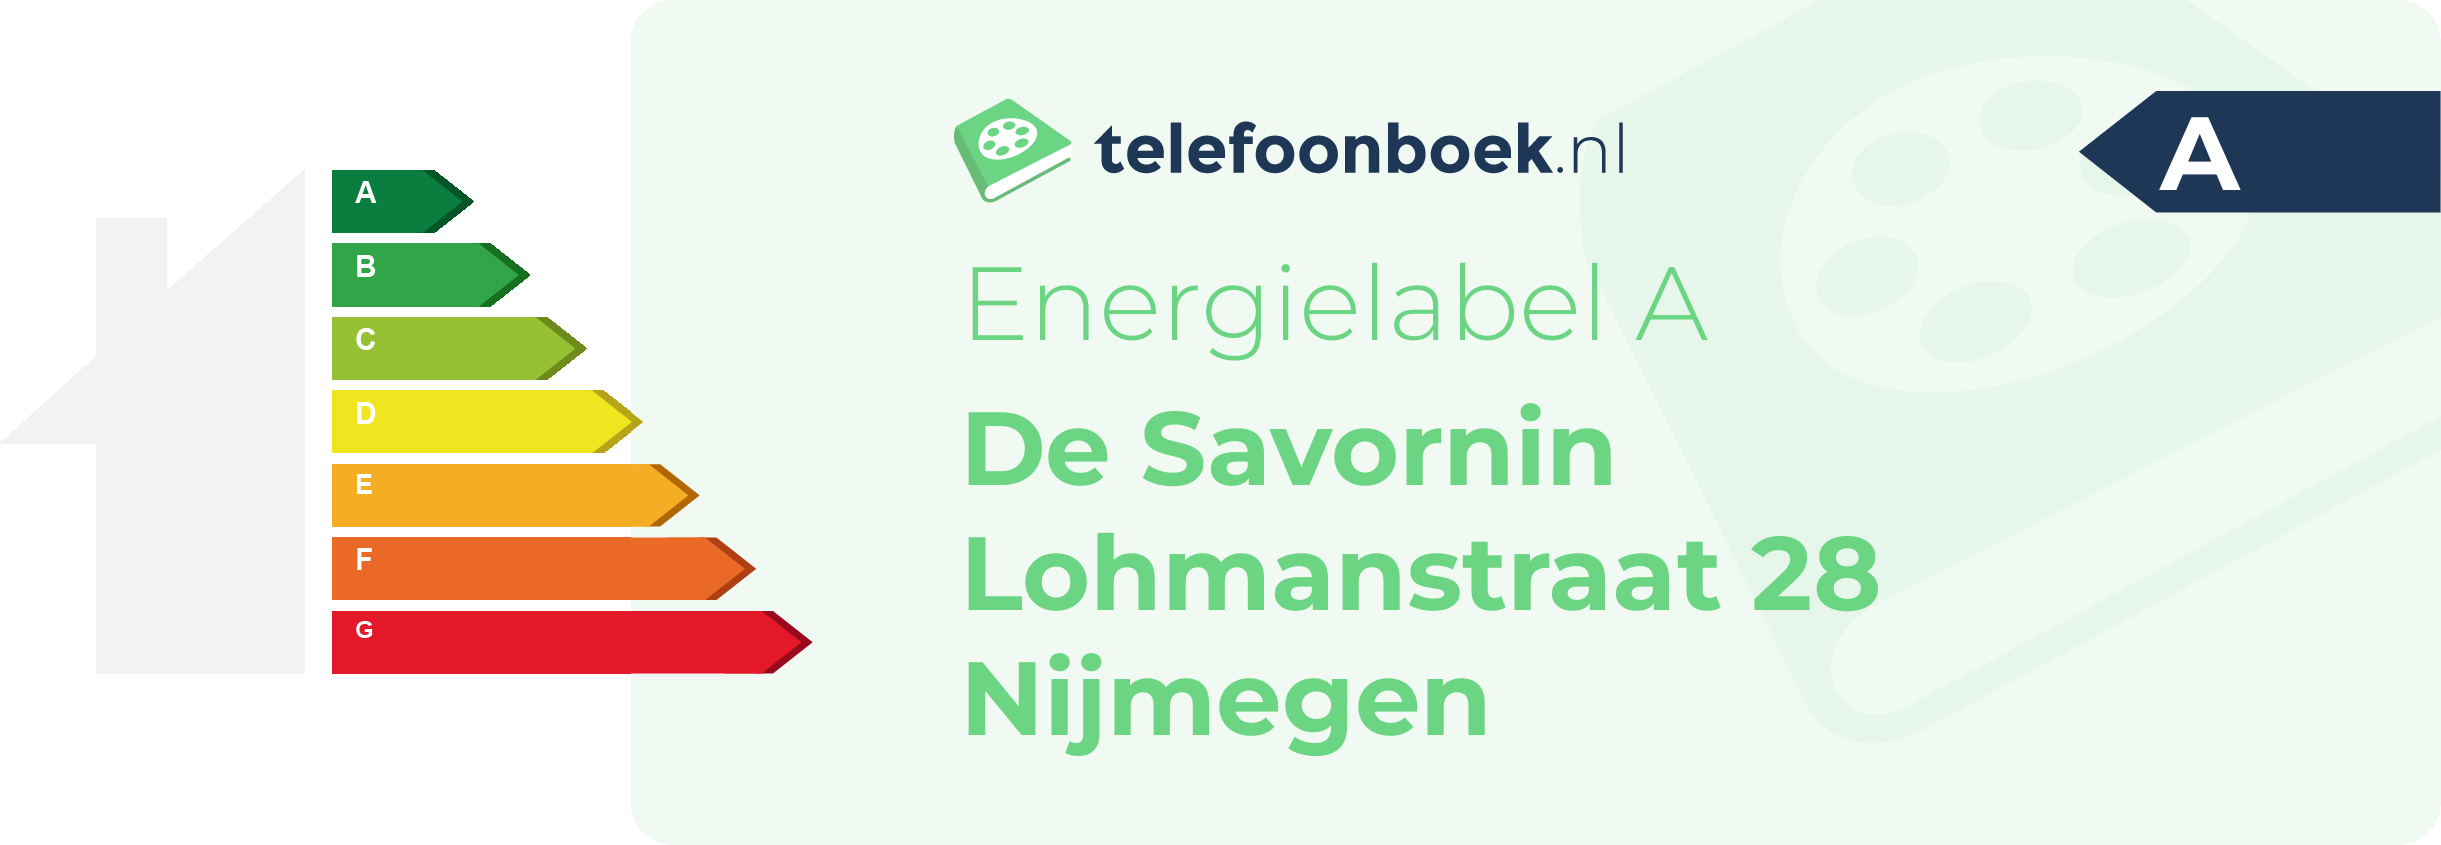 Energielabel De Savornin Lohmanstraat 28 Nijmegen